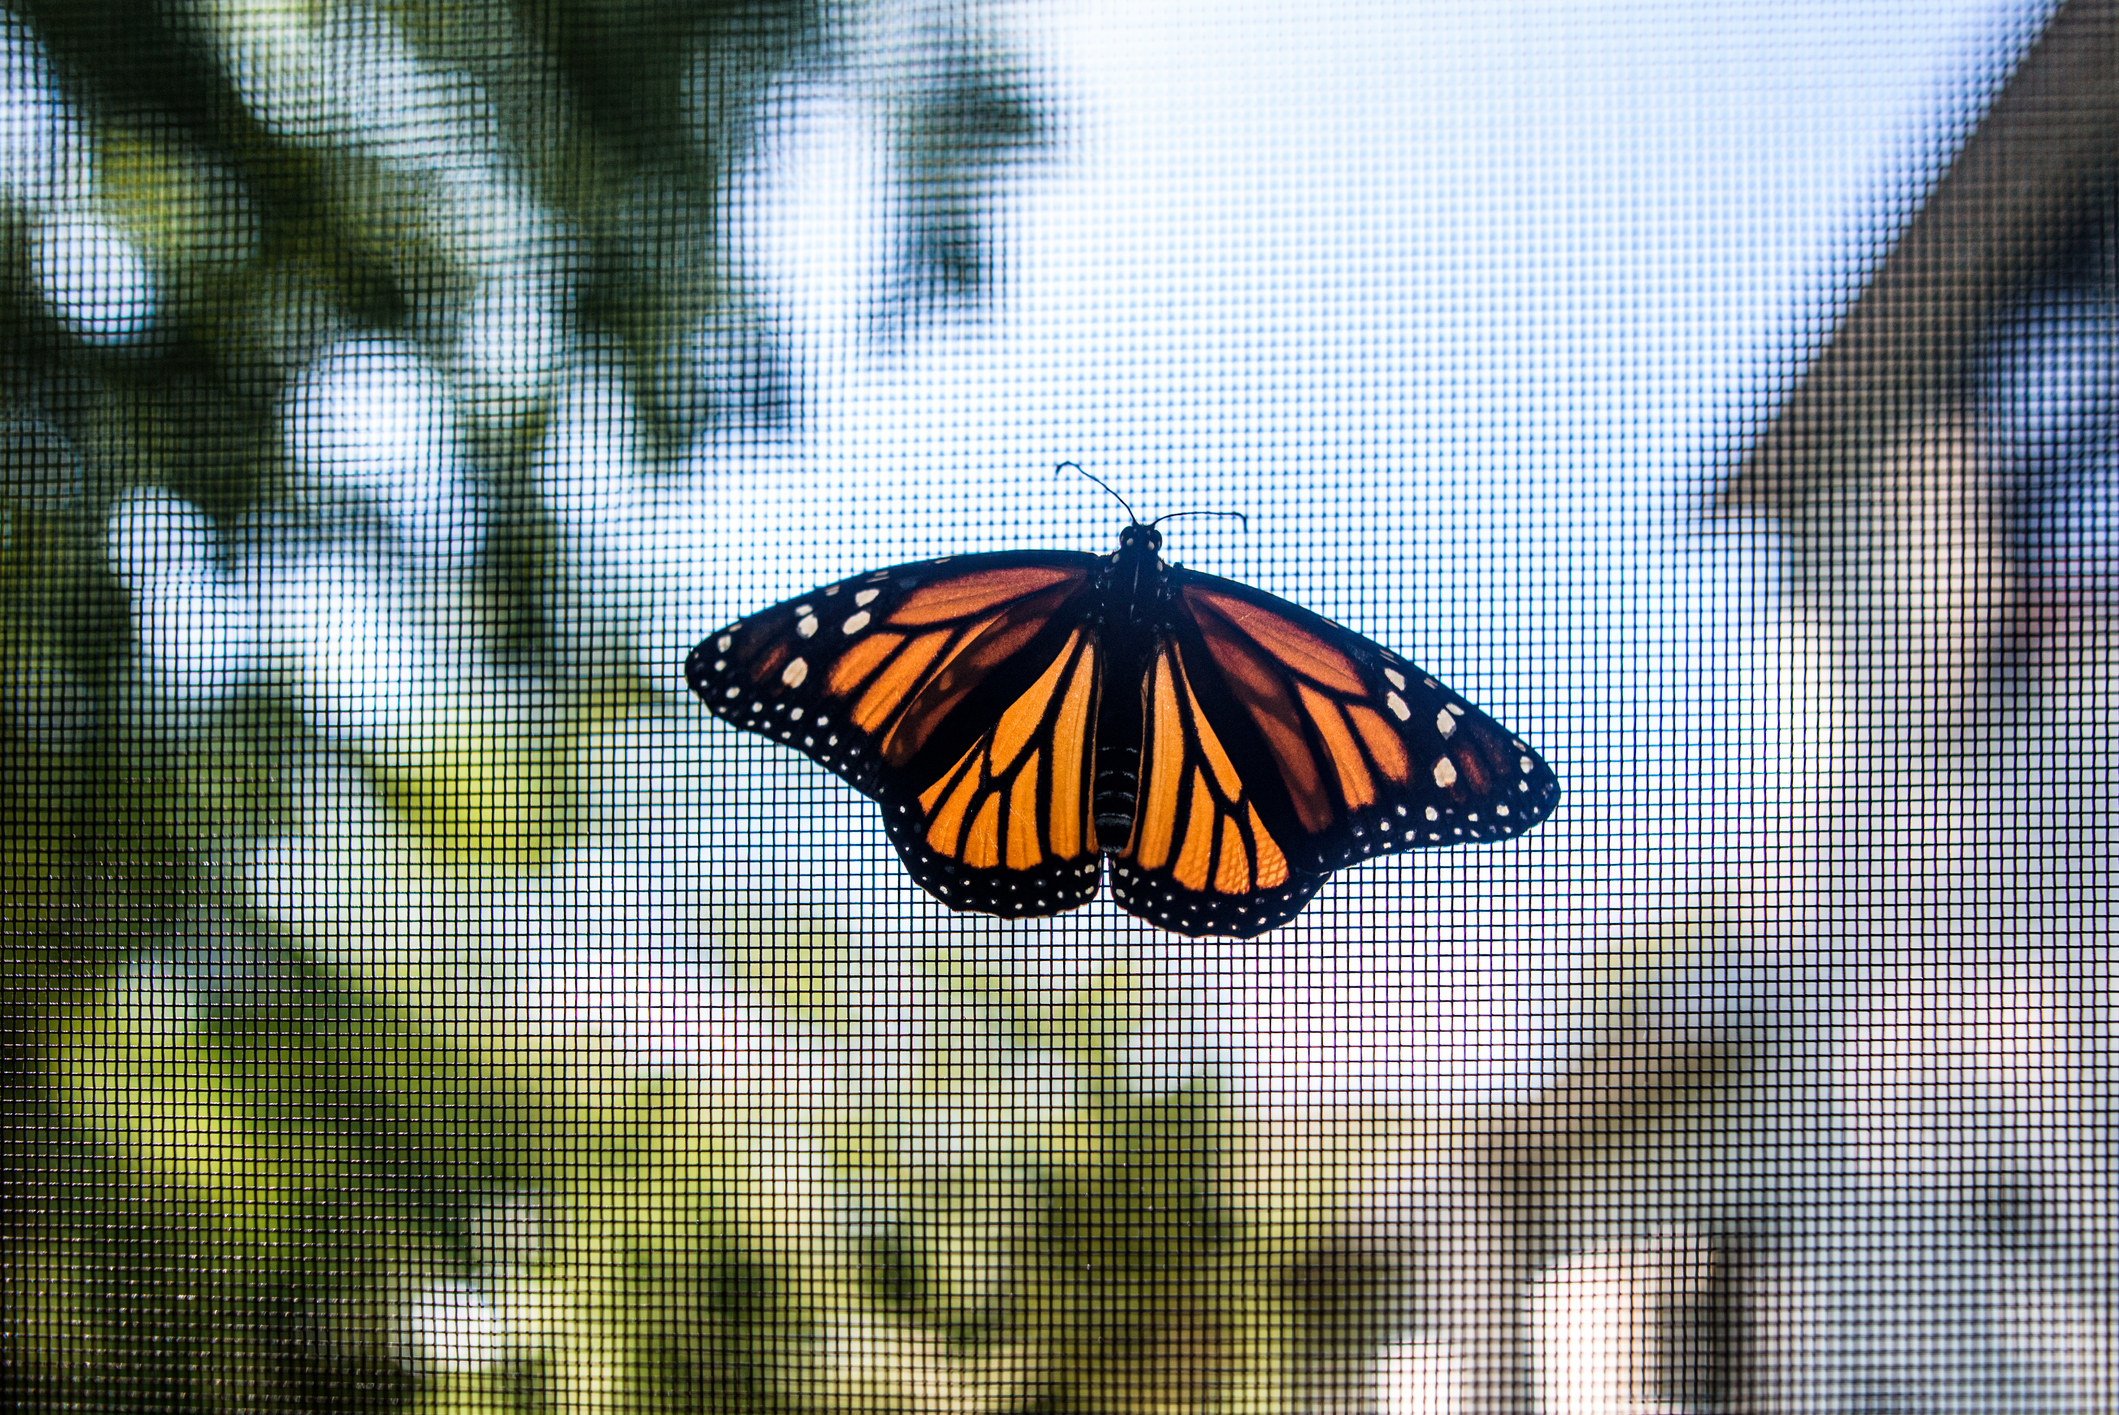 A butterfly on a window screen